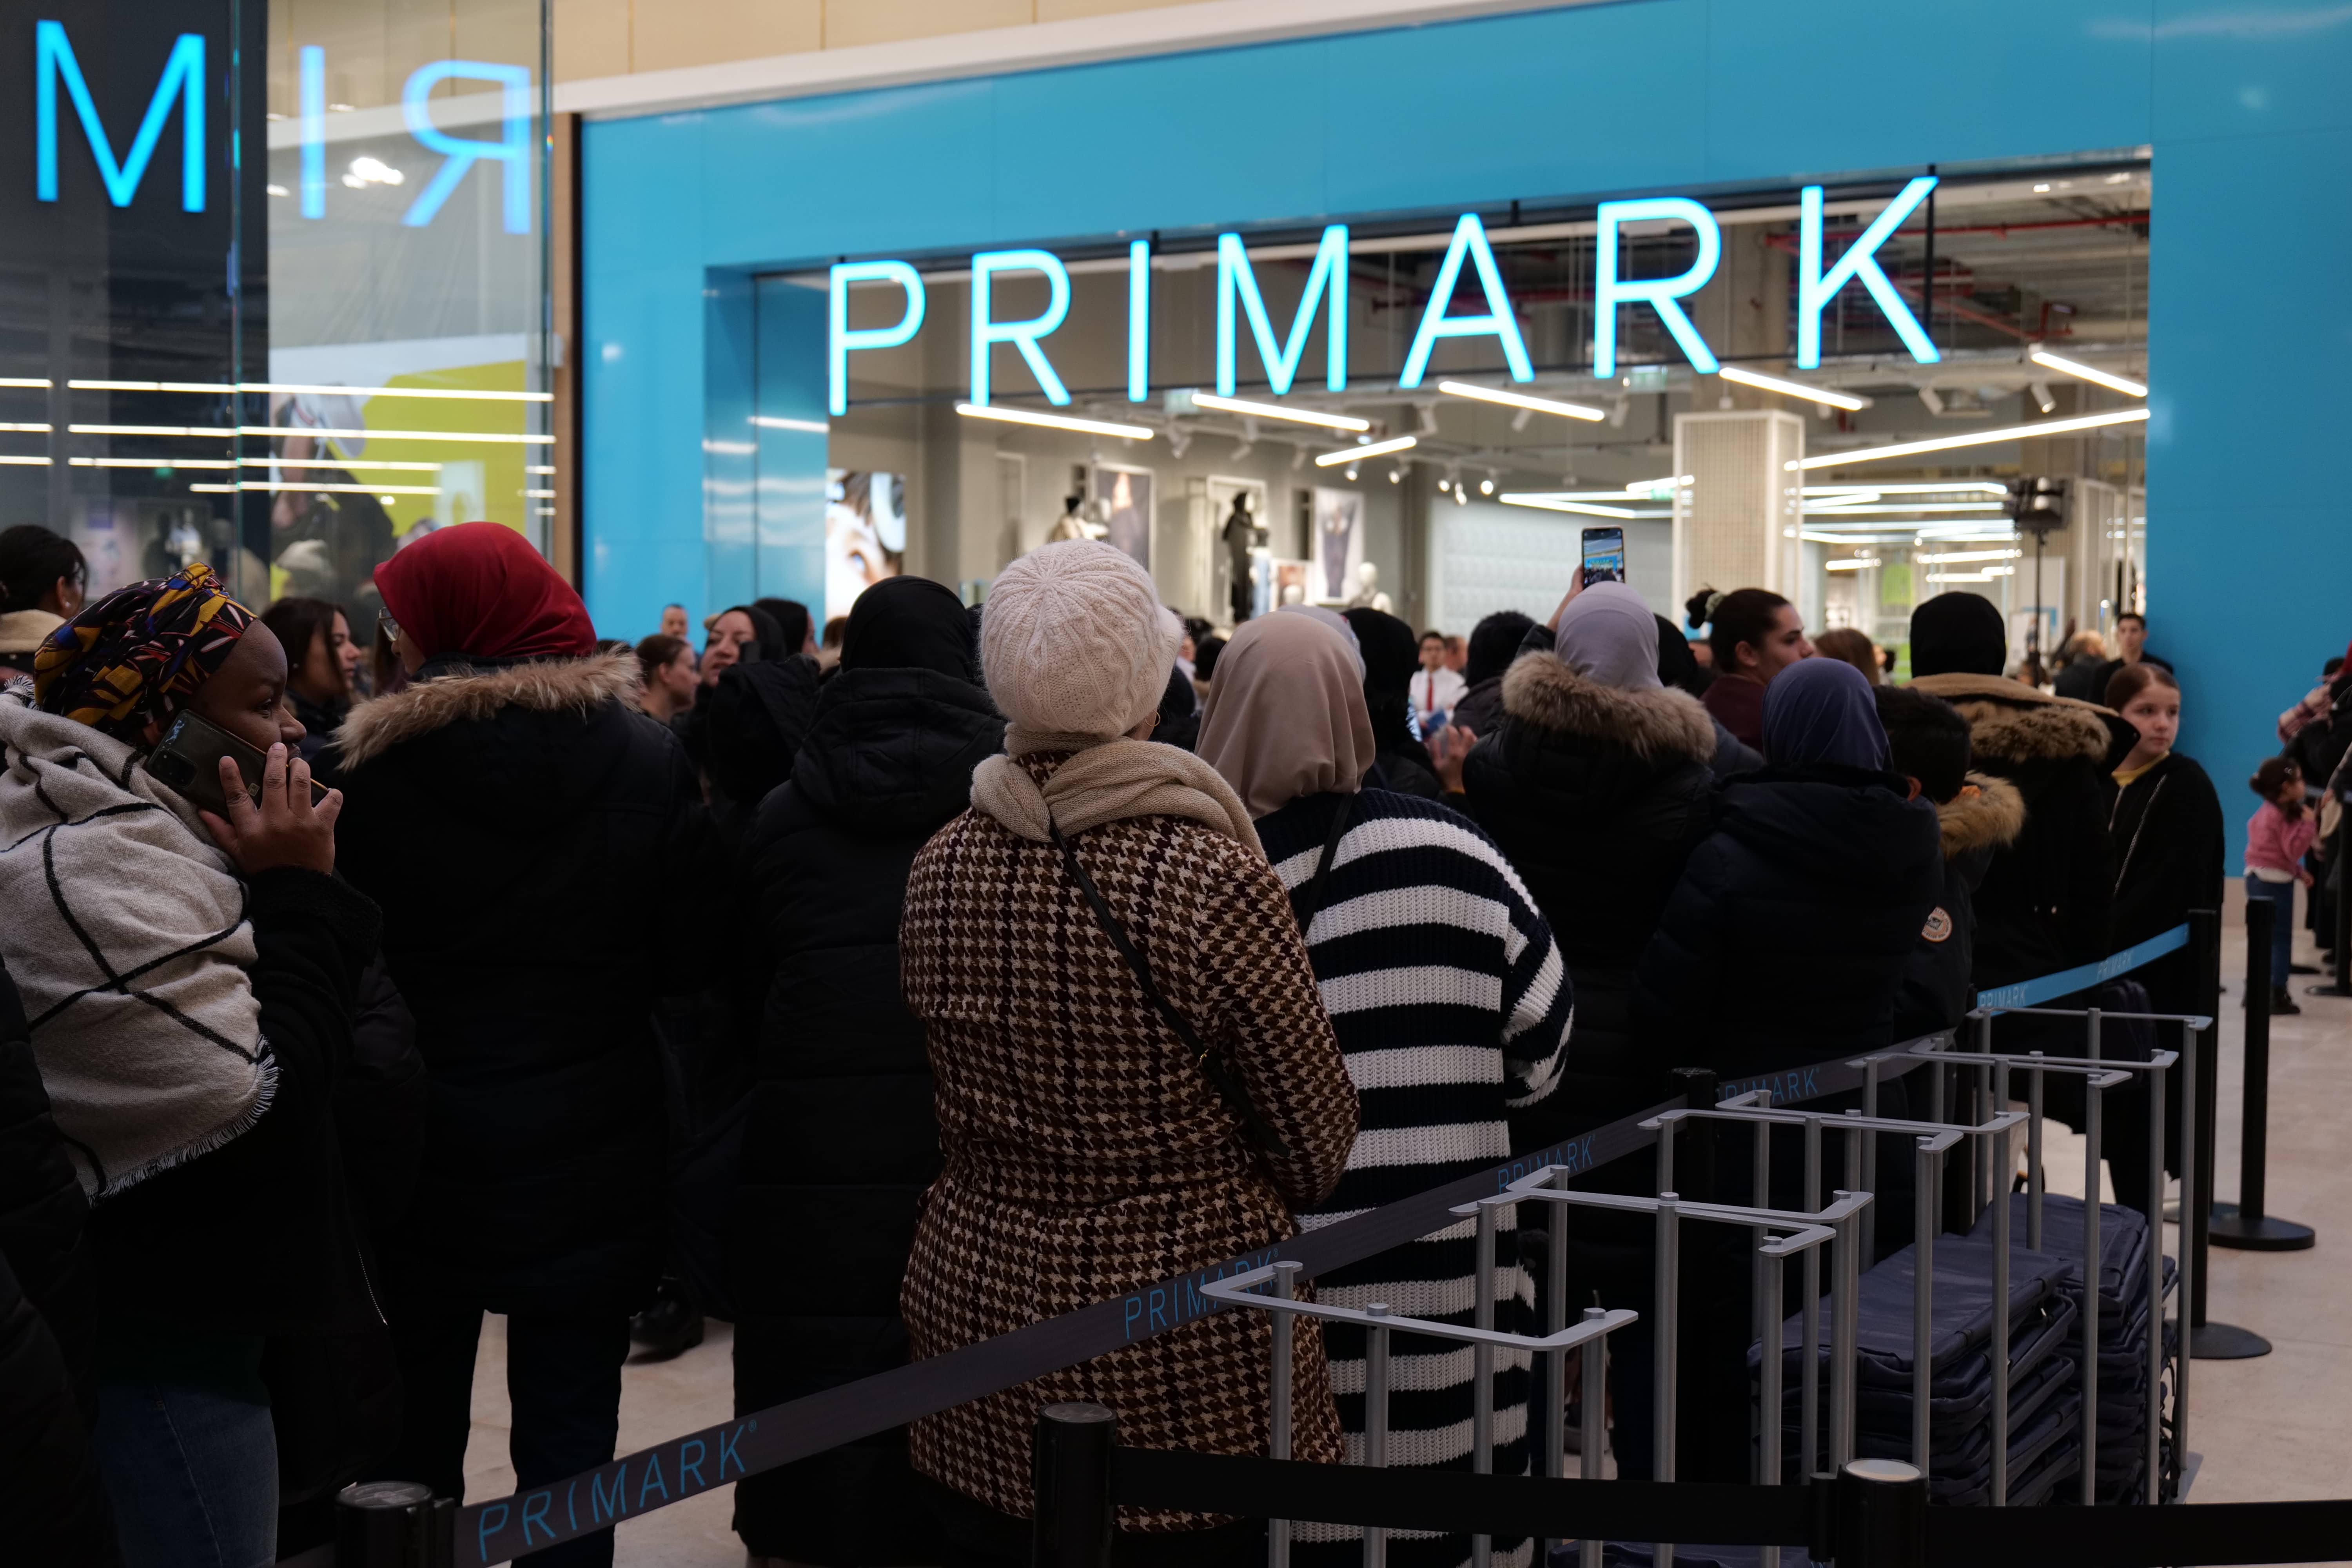 Des queues s'allongent devant le magasin Primark.